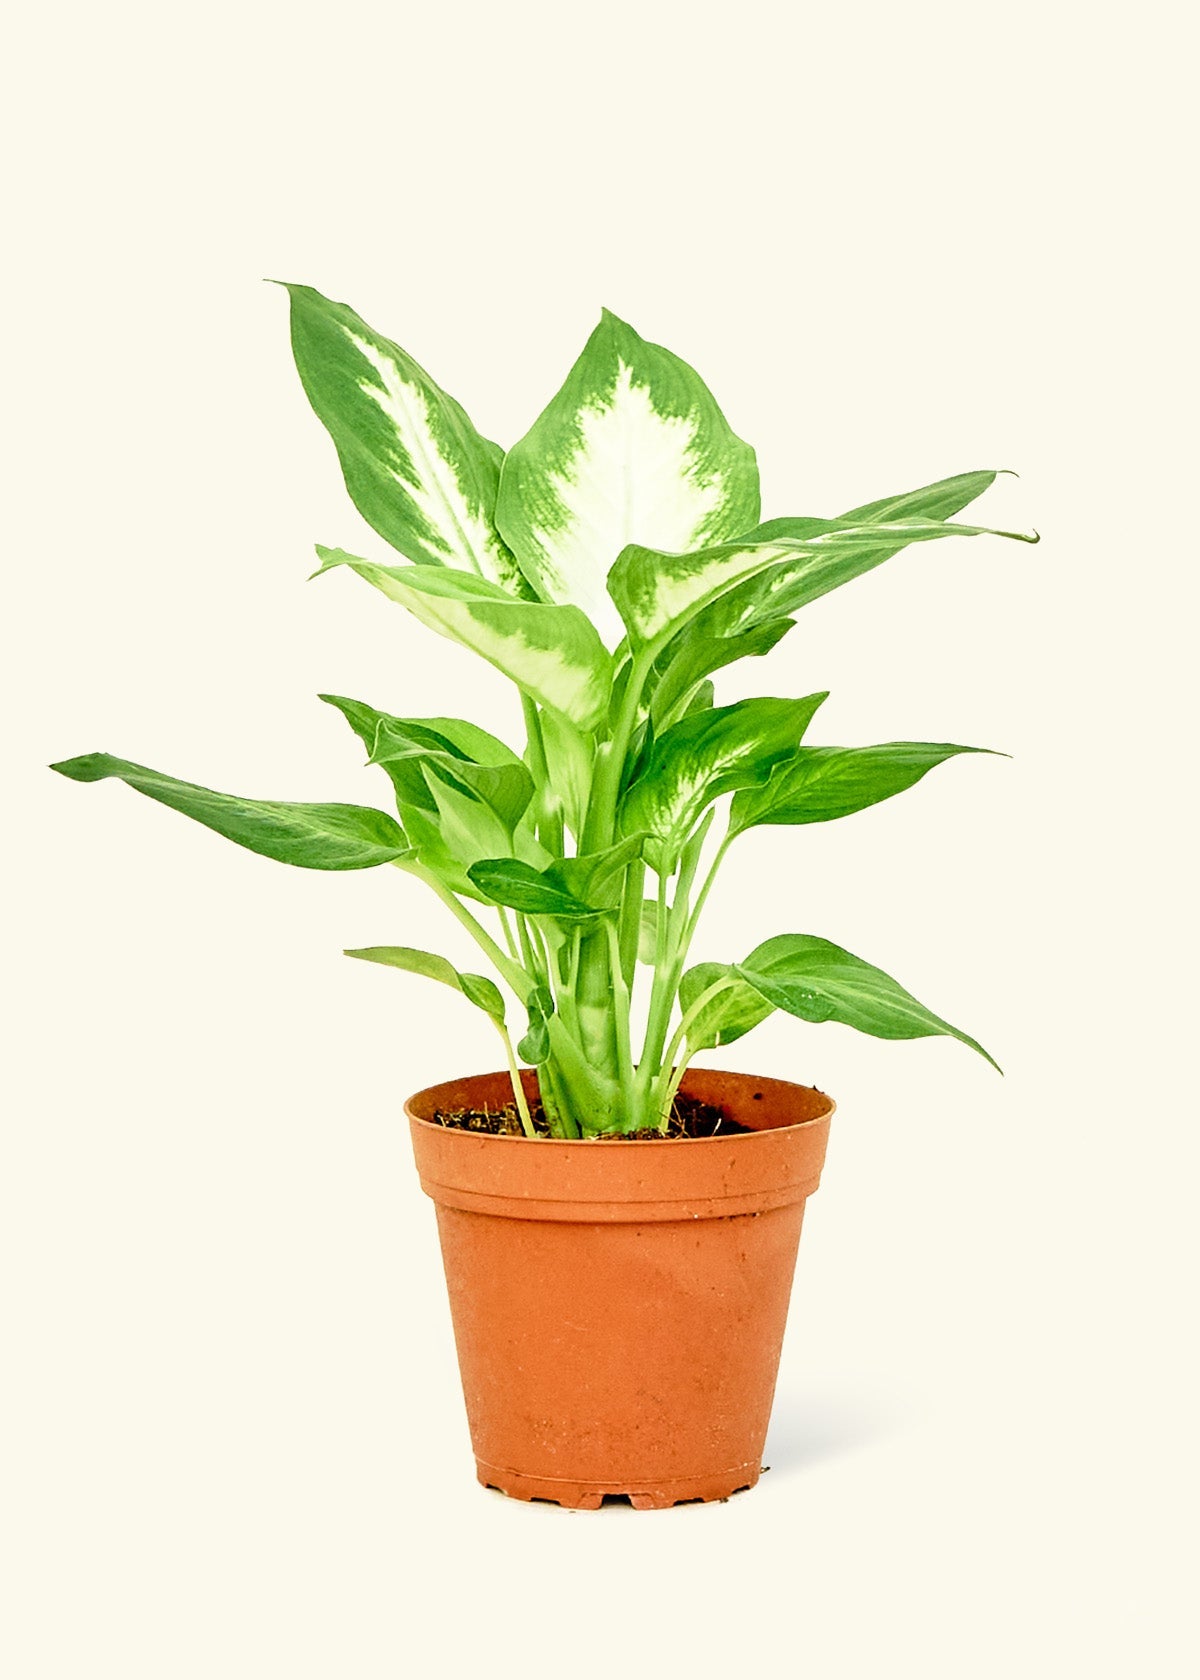 Small Dieffenbachia (Dieffenbachia 'Camille') in a grow pot.